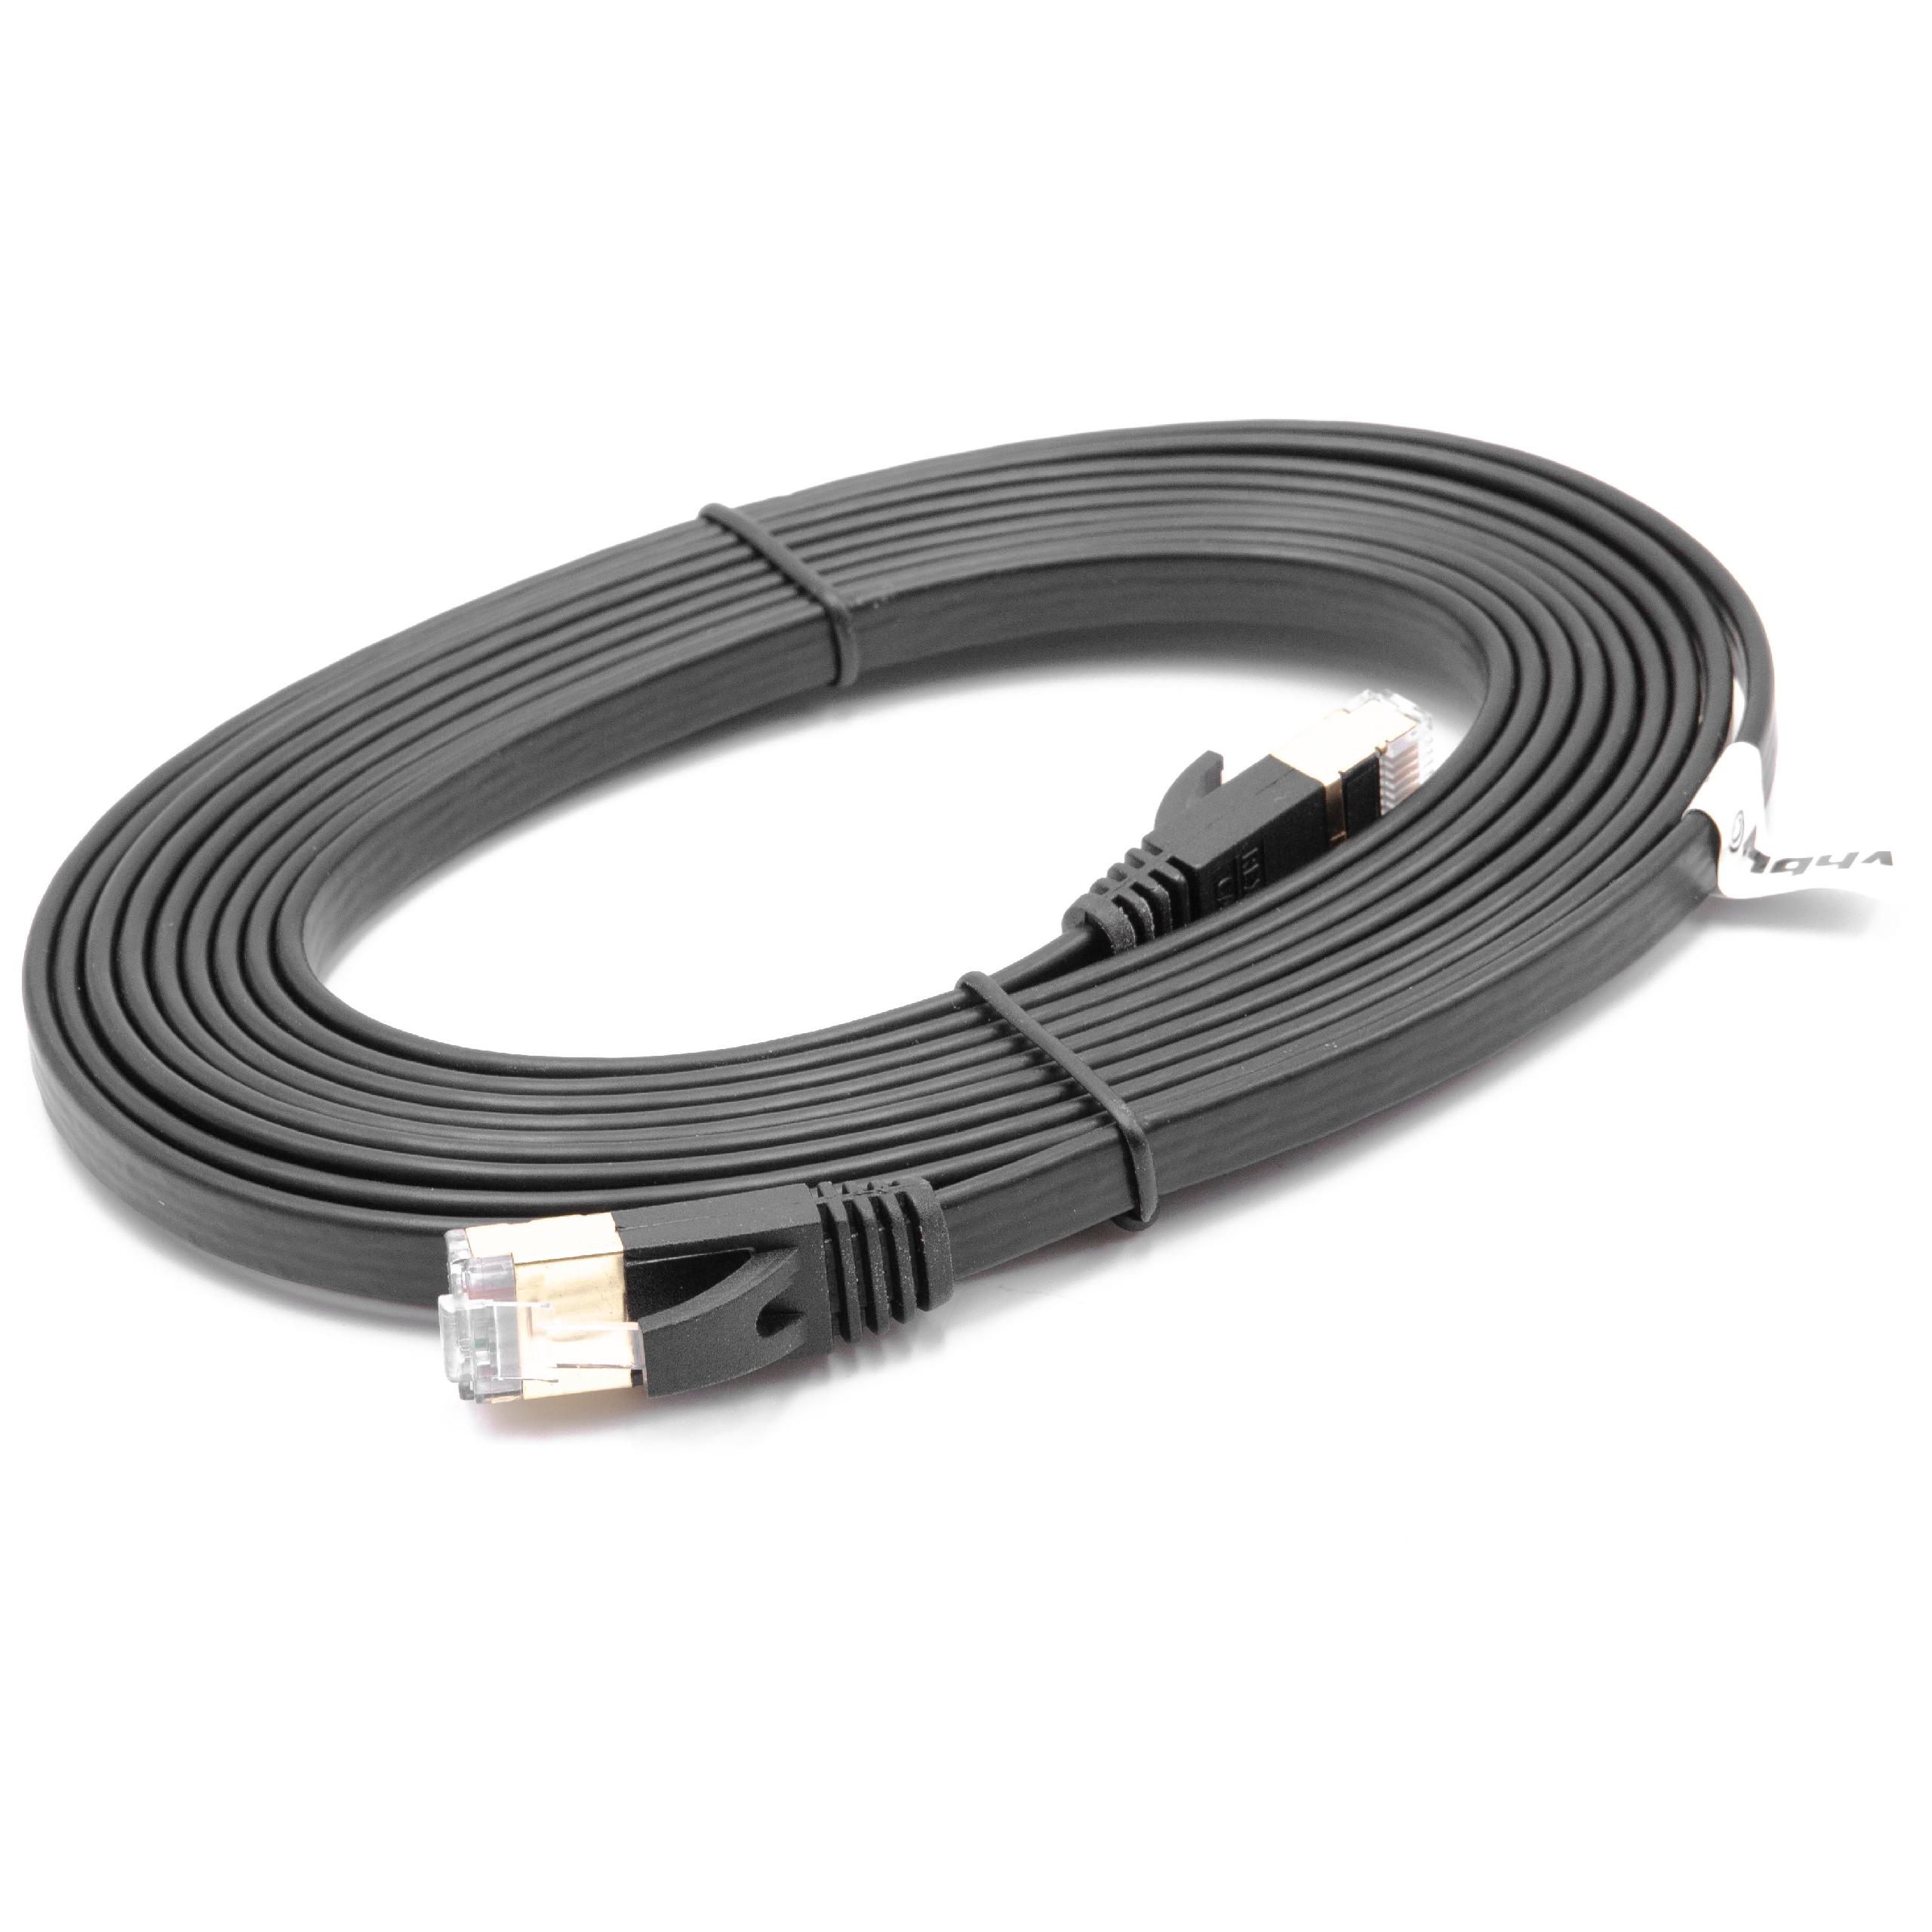 Cable de red de Ethernet, LAN, cable patch Cat7 3m negro cable plano de tendido